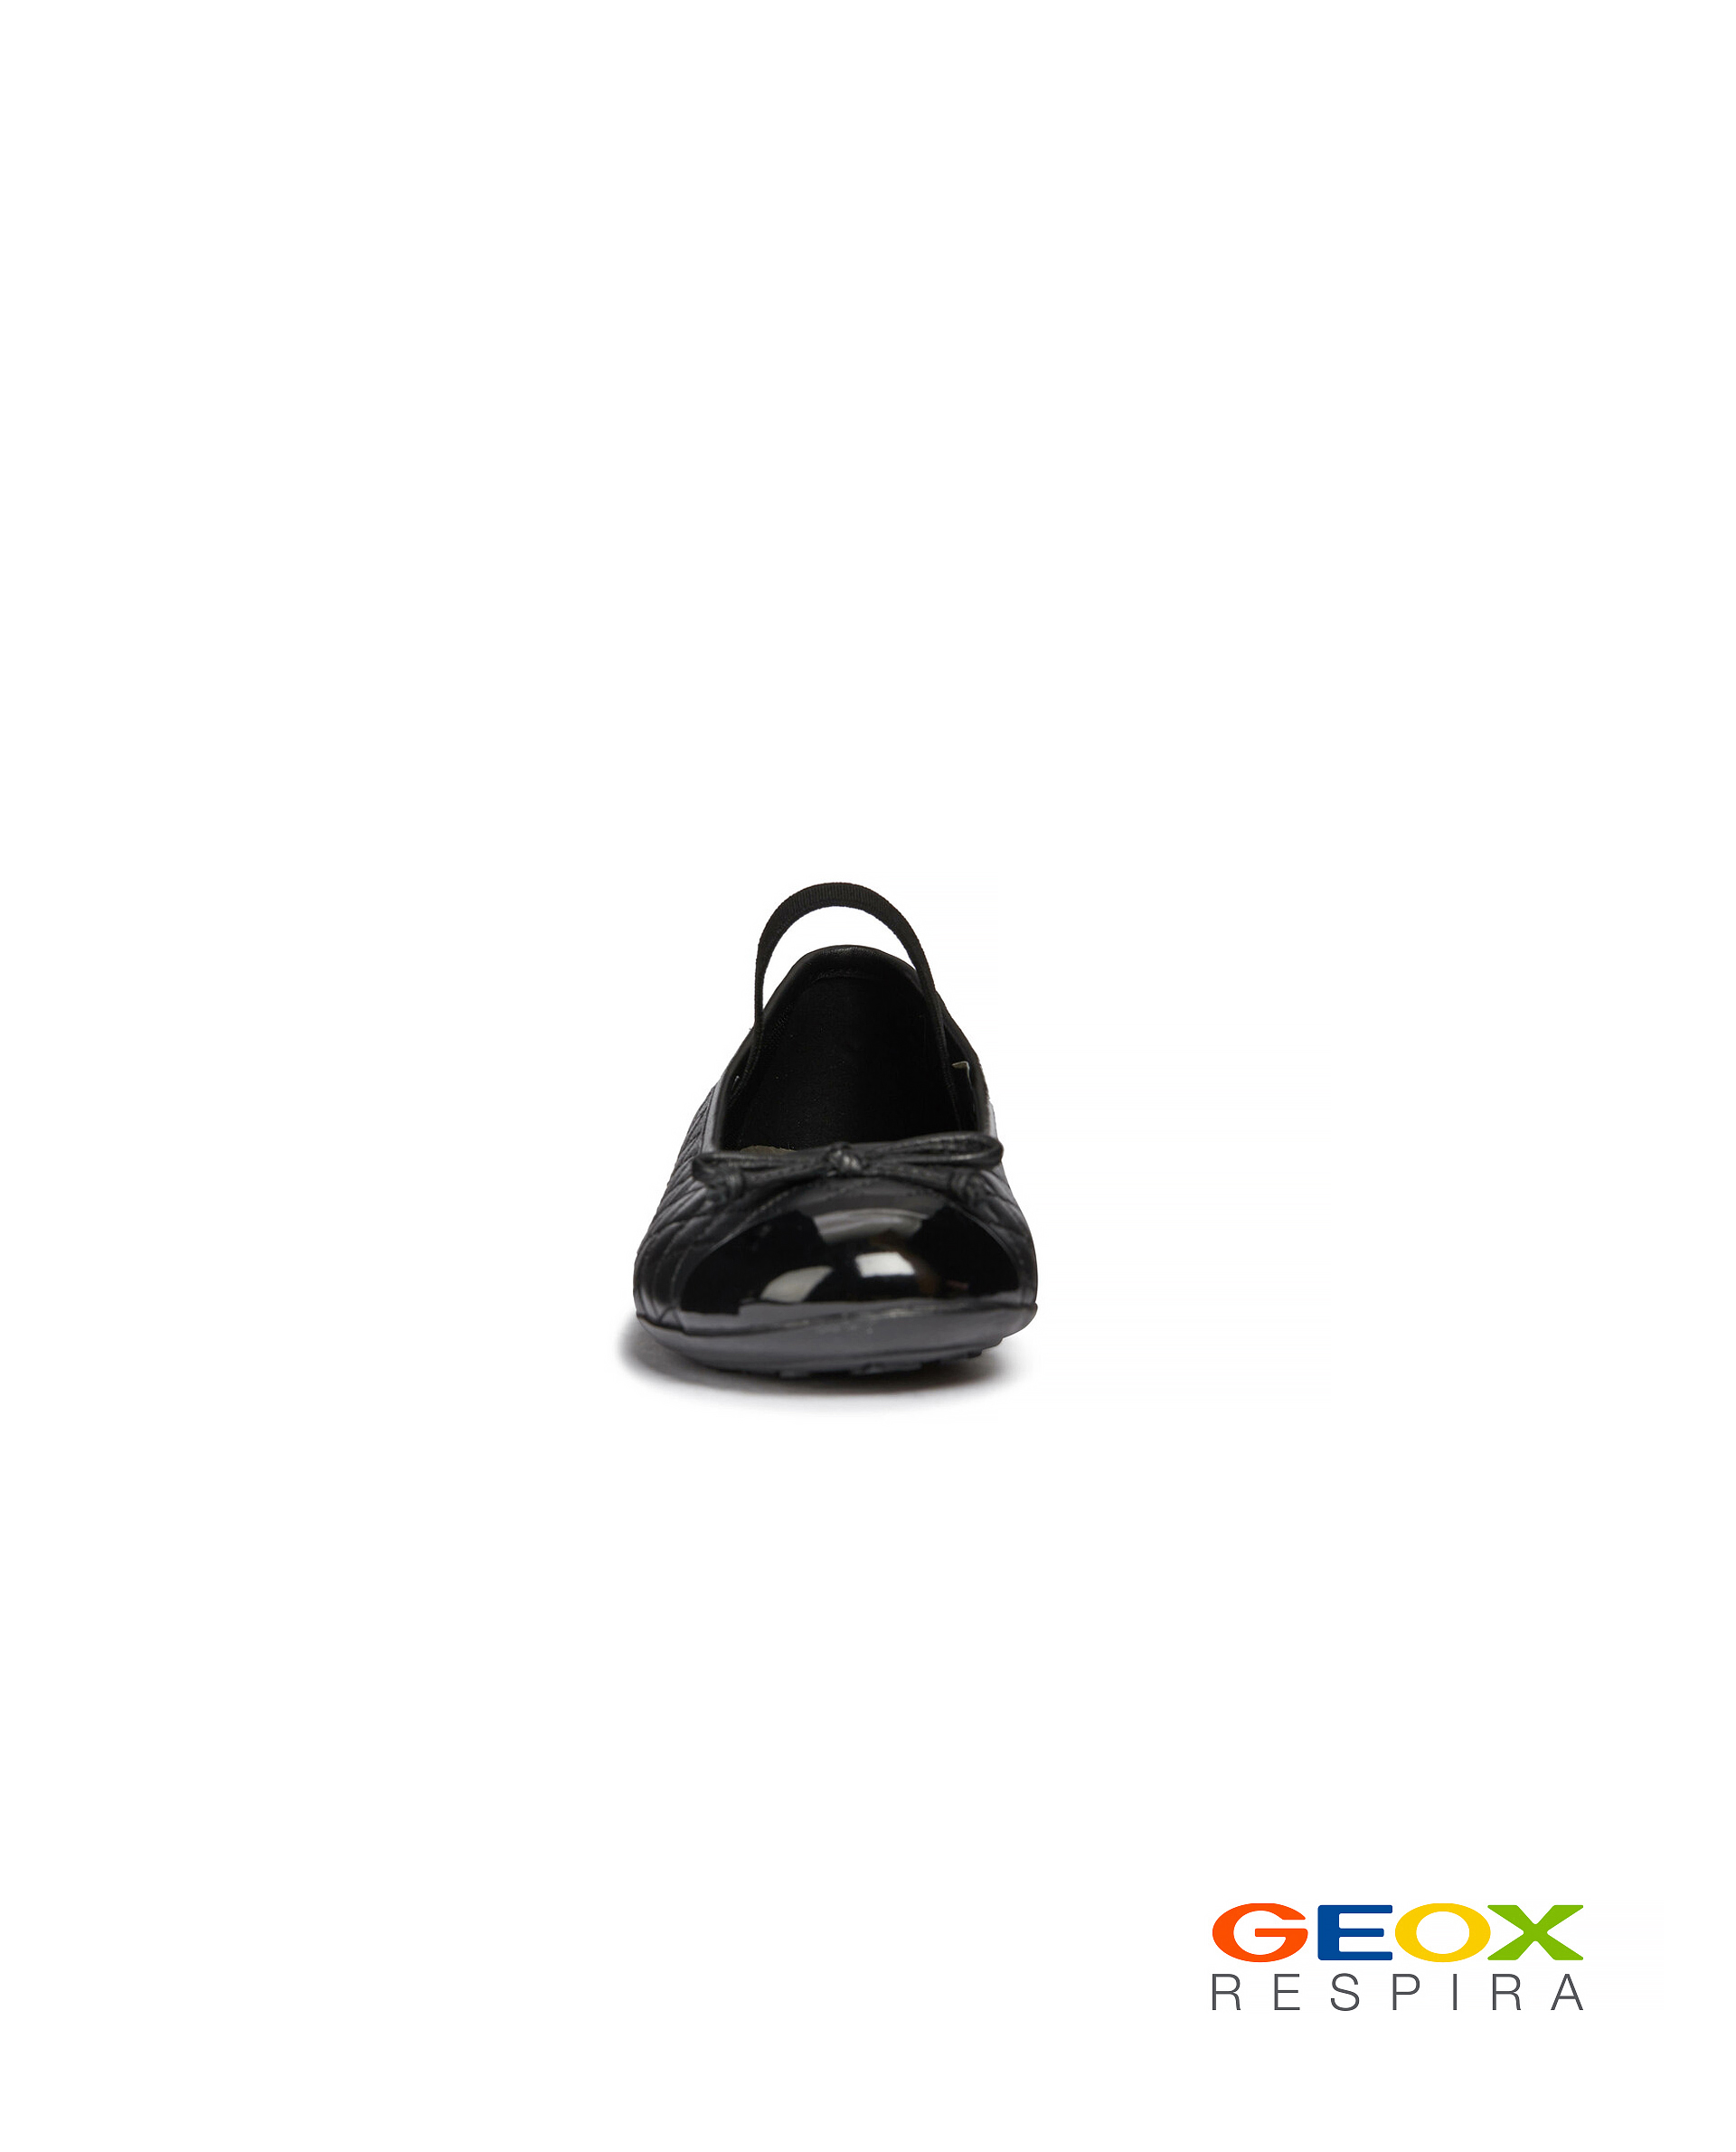 Черные балетки Geox 219GSGS0001, размер 34, цвет черный - фото 3